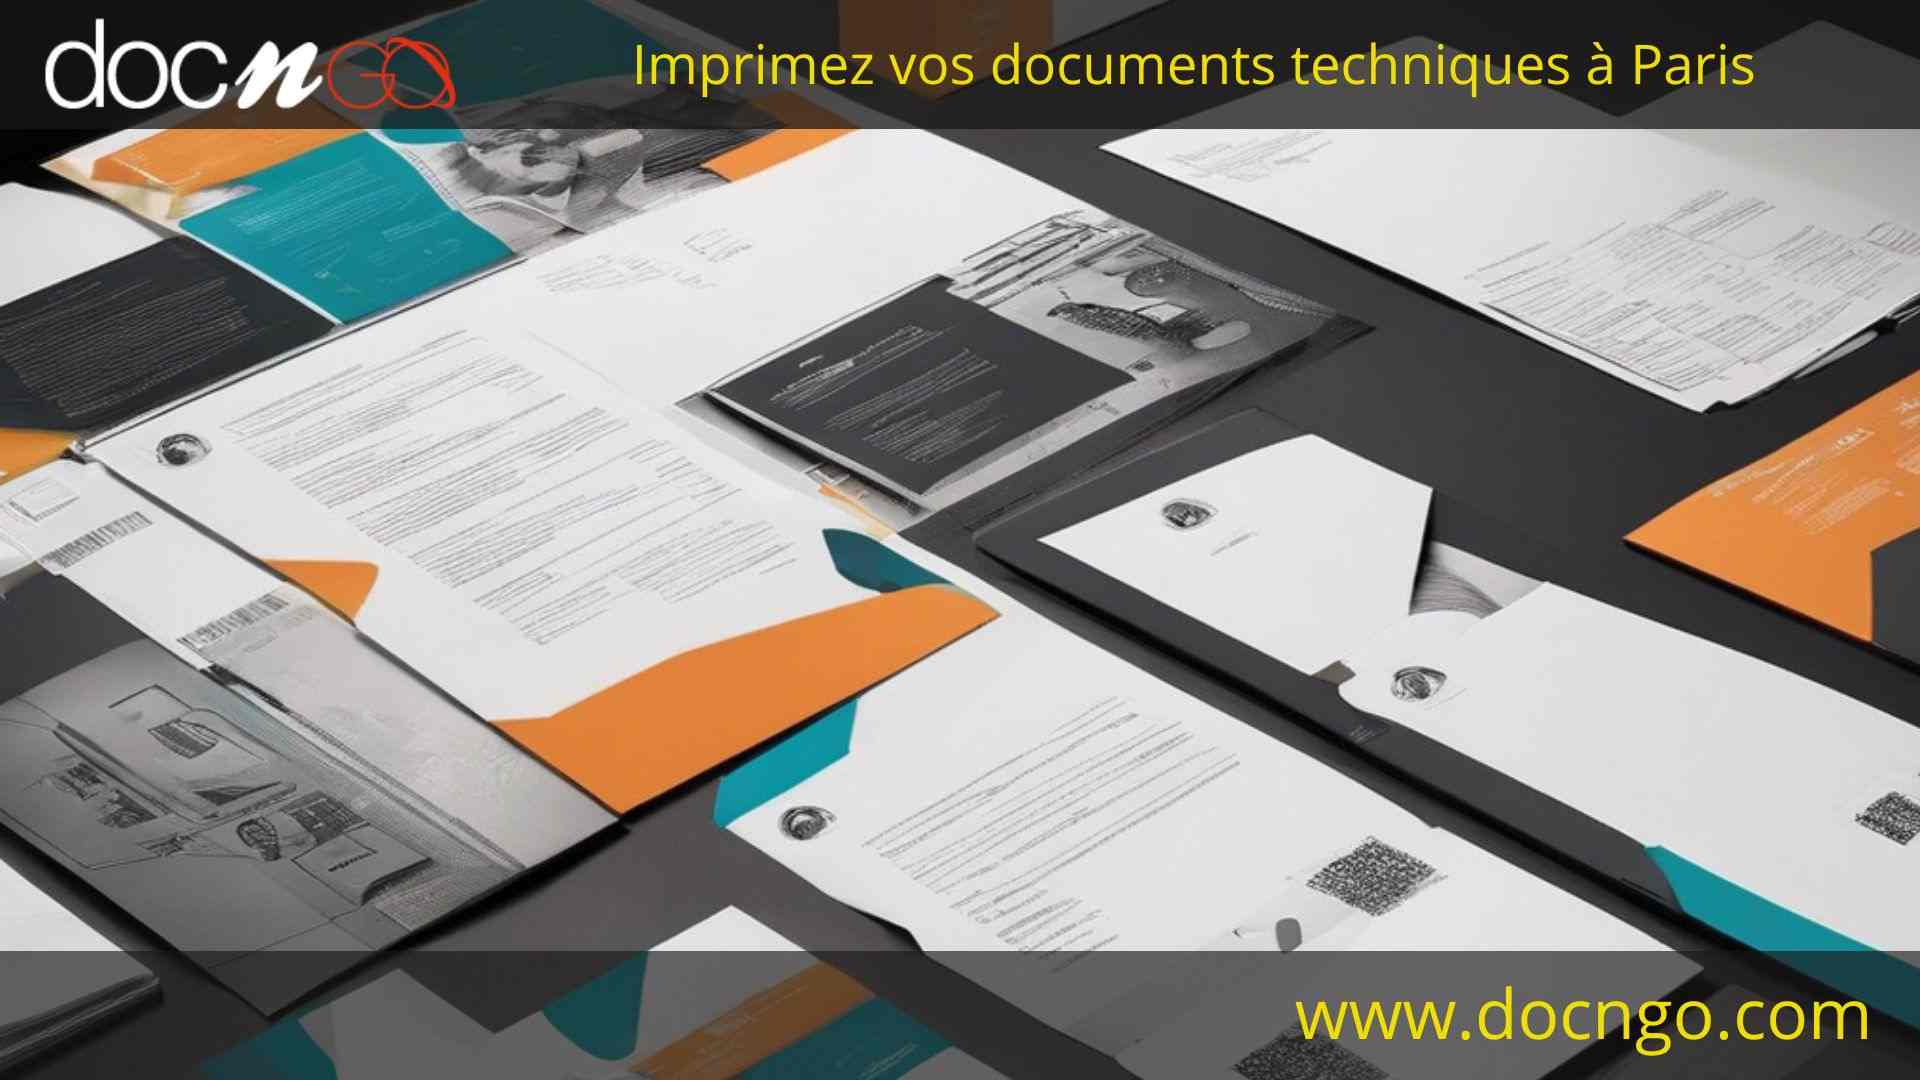 Impression documents techniques Paris